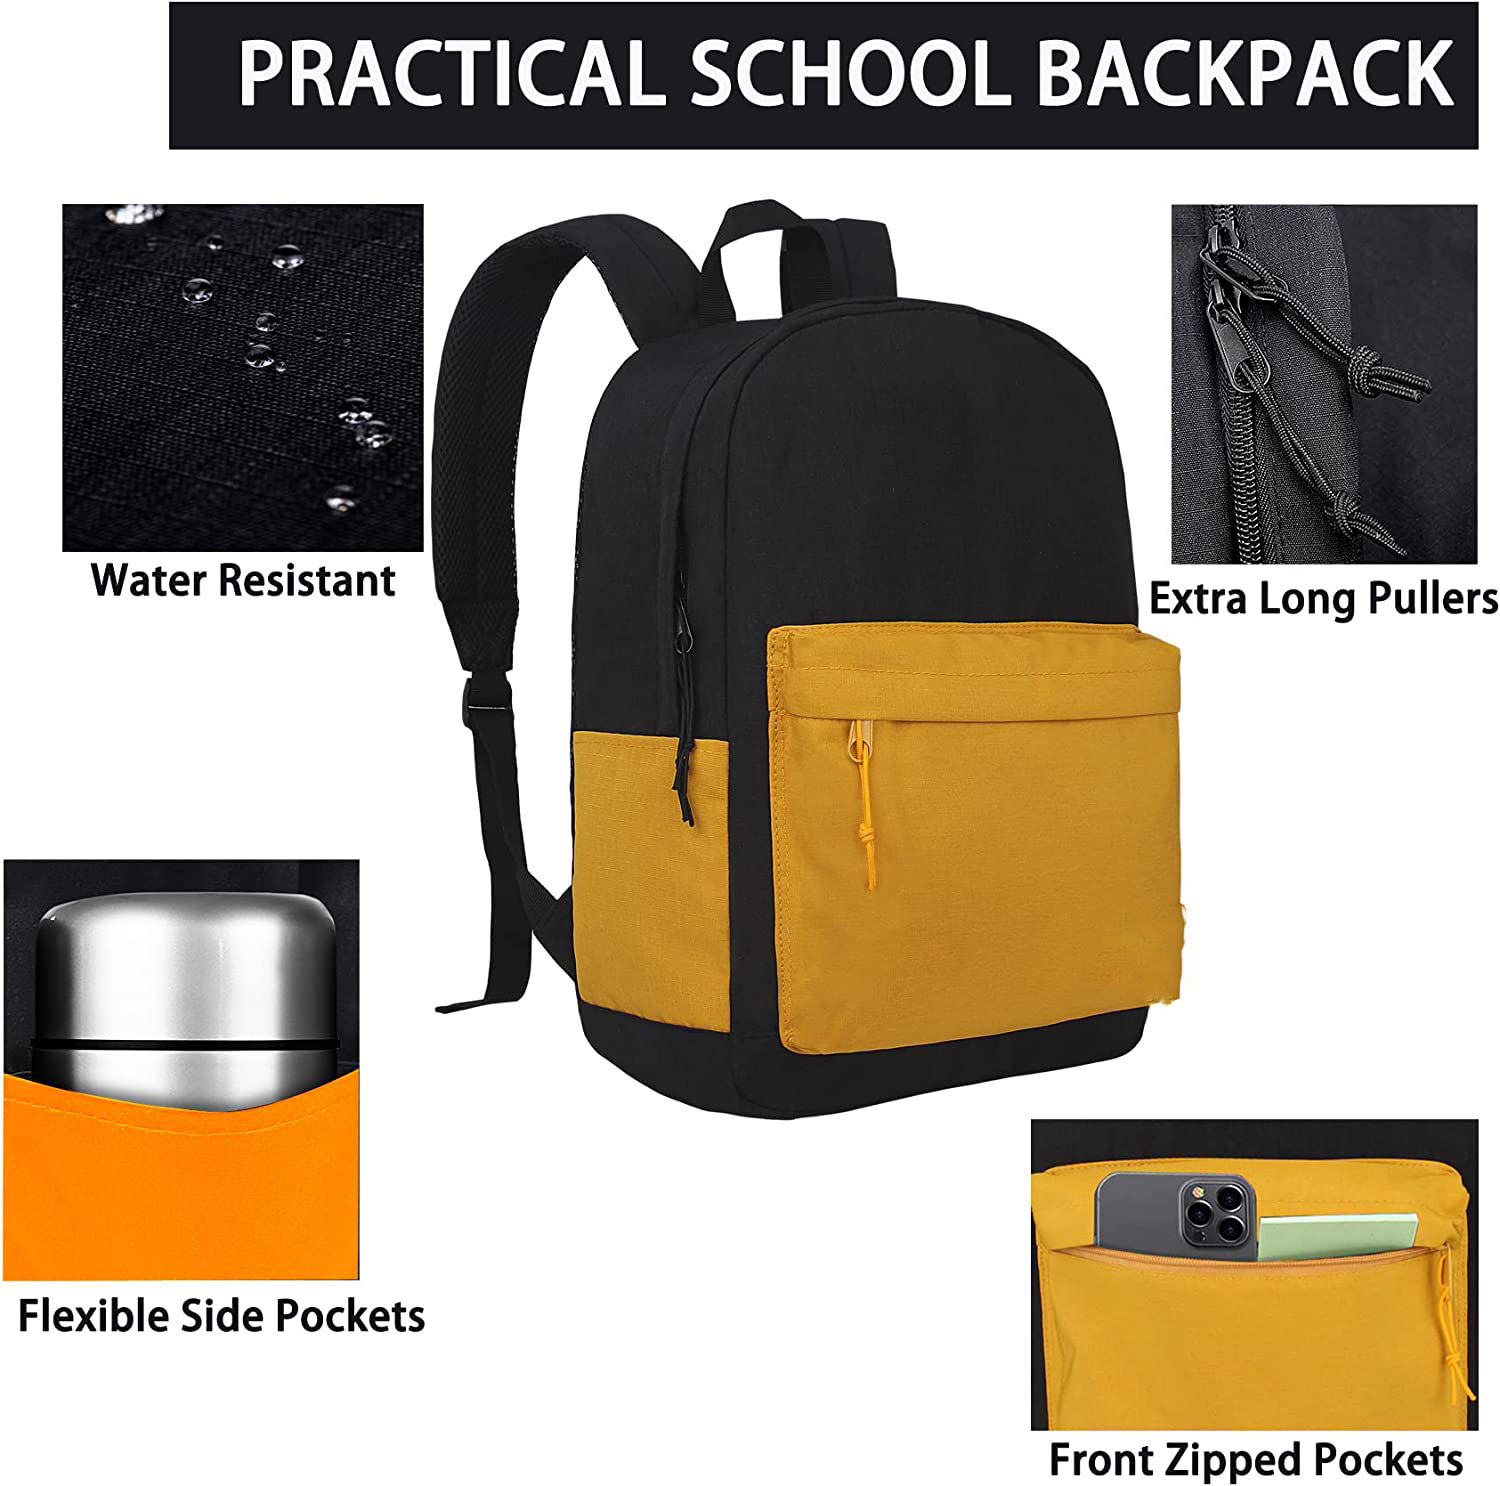 Sac à dos de voyage étanche sacs pour ordinateur portable enfants école sac à dos en gros